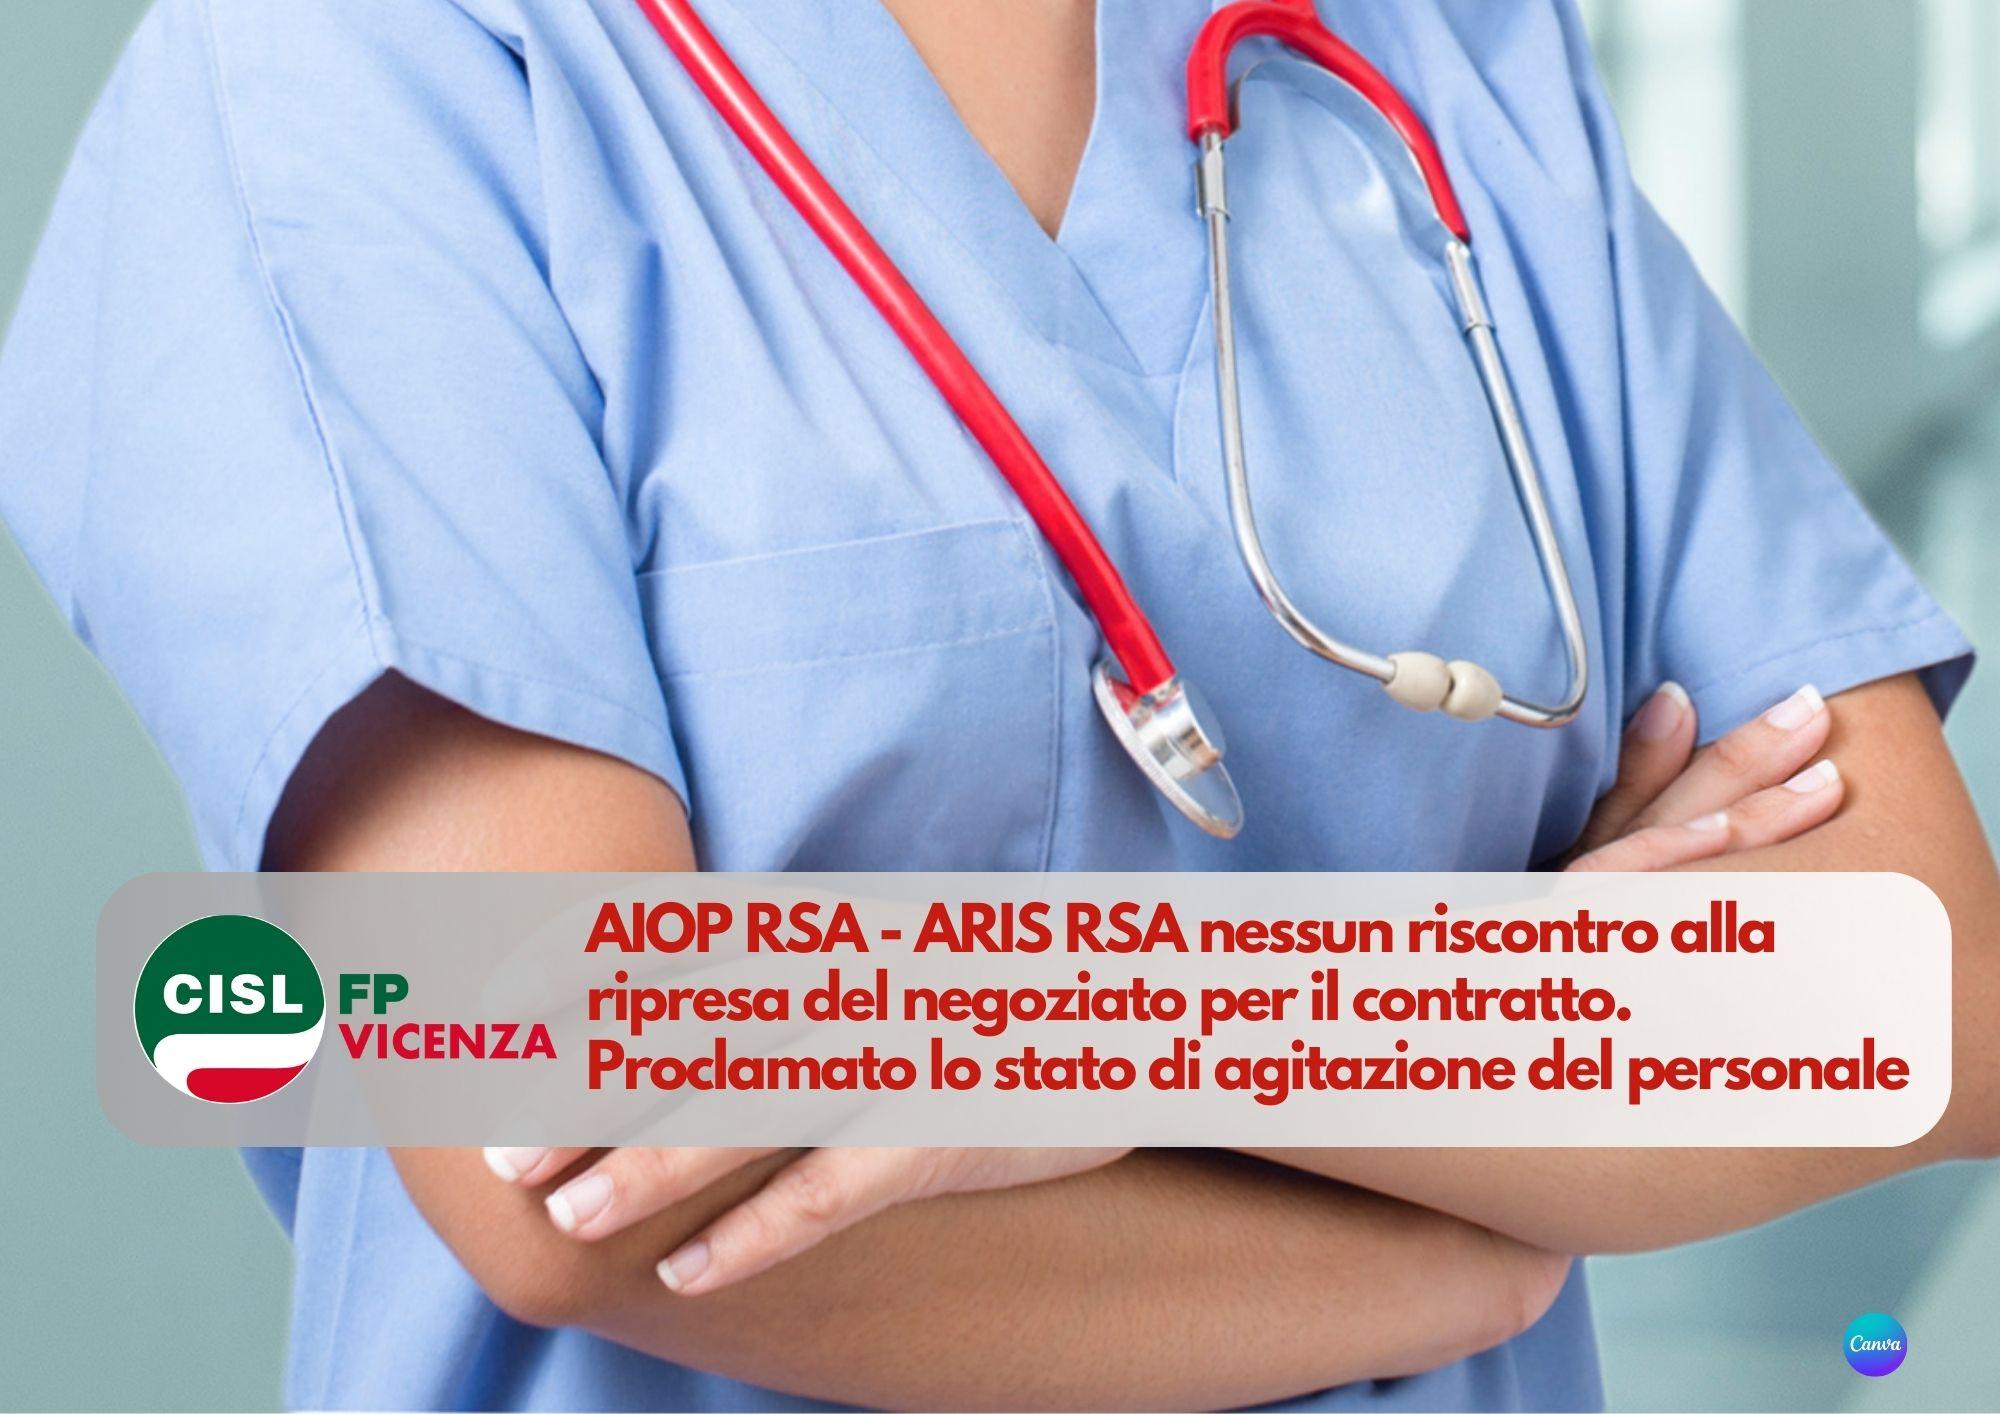 CISL FP Vicenza. AIOP RSA - ARIS RSA nessun riscontro. Stato di agitazione, verso la mobilitazione.